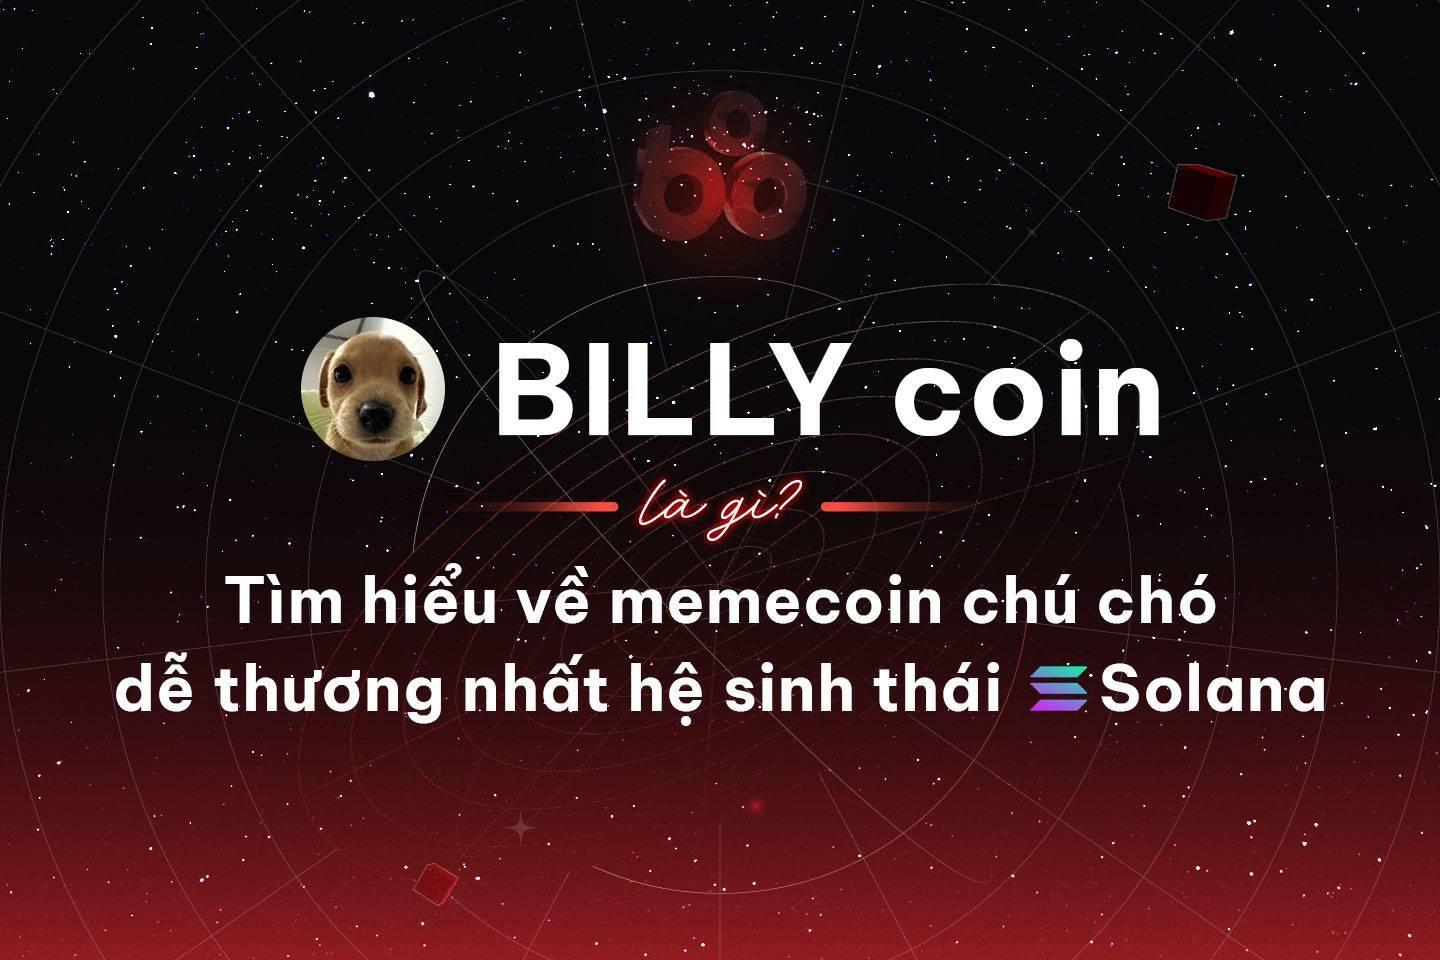 billy-coin-la-gi-tim-hieu-ve-memecoin-chu-cho-de-thuong-nhat-he-sinh-thai-solana